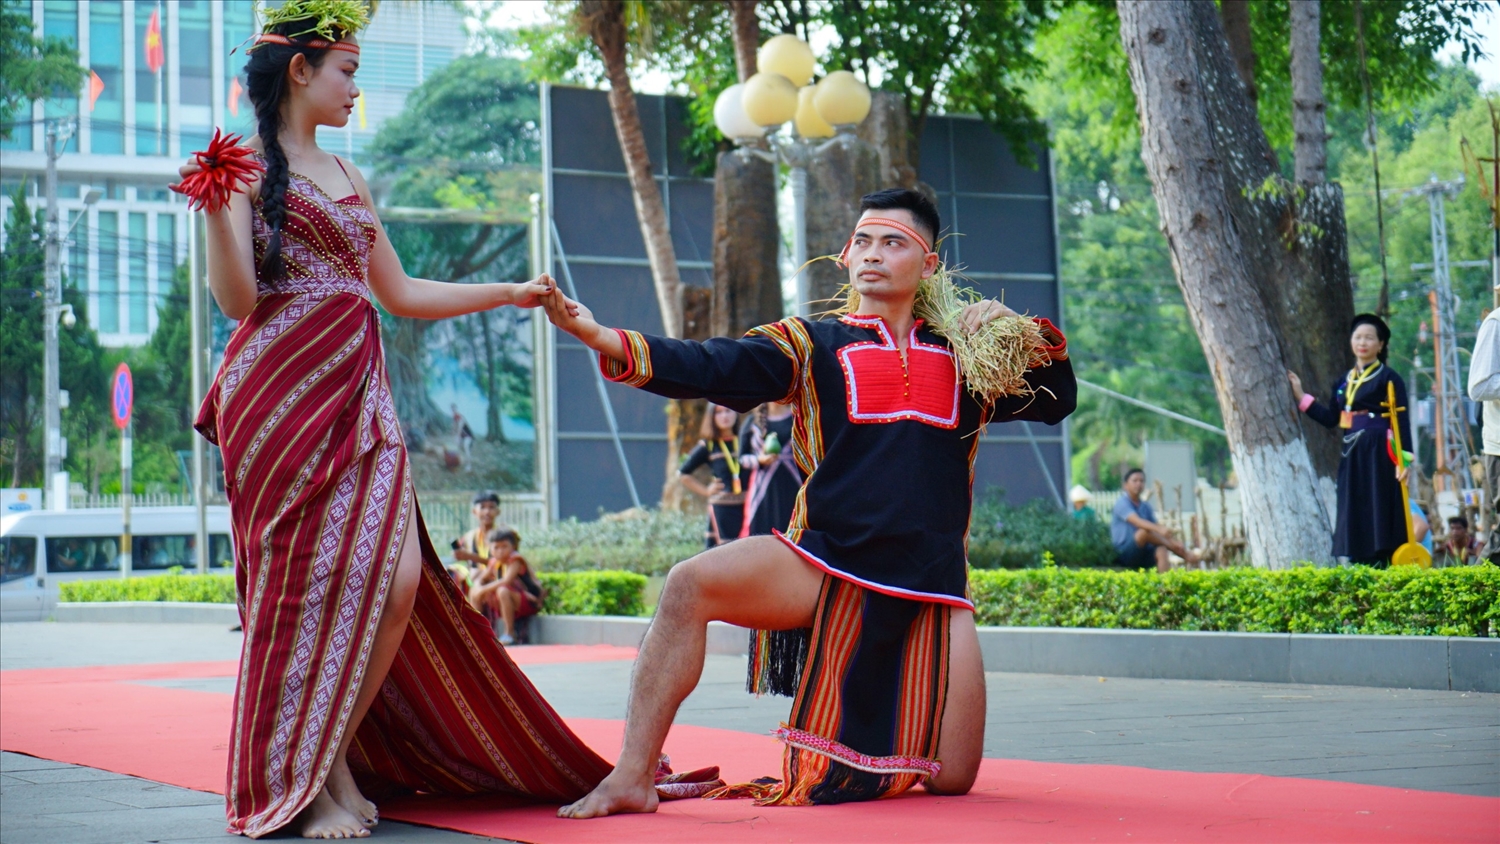 Các nghệ nhân tự hào khoác lên mình trang phục truyền thống dân tộc Gia Rai tự tin trình diễn